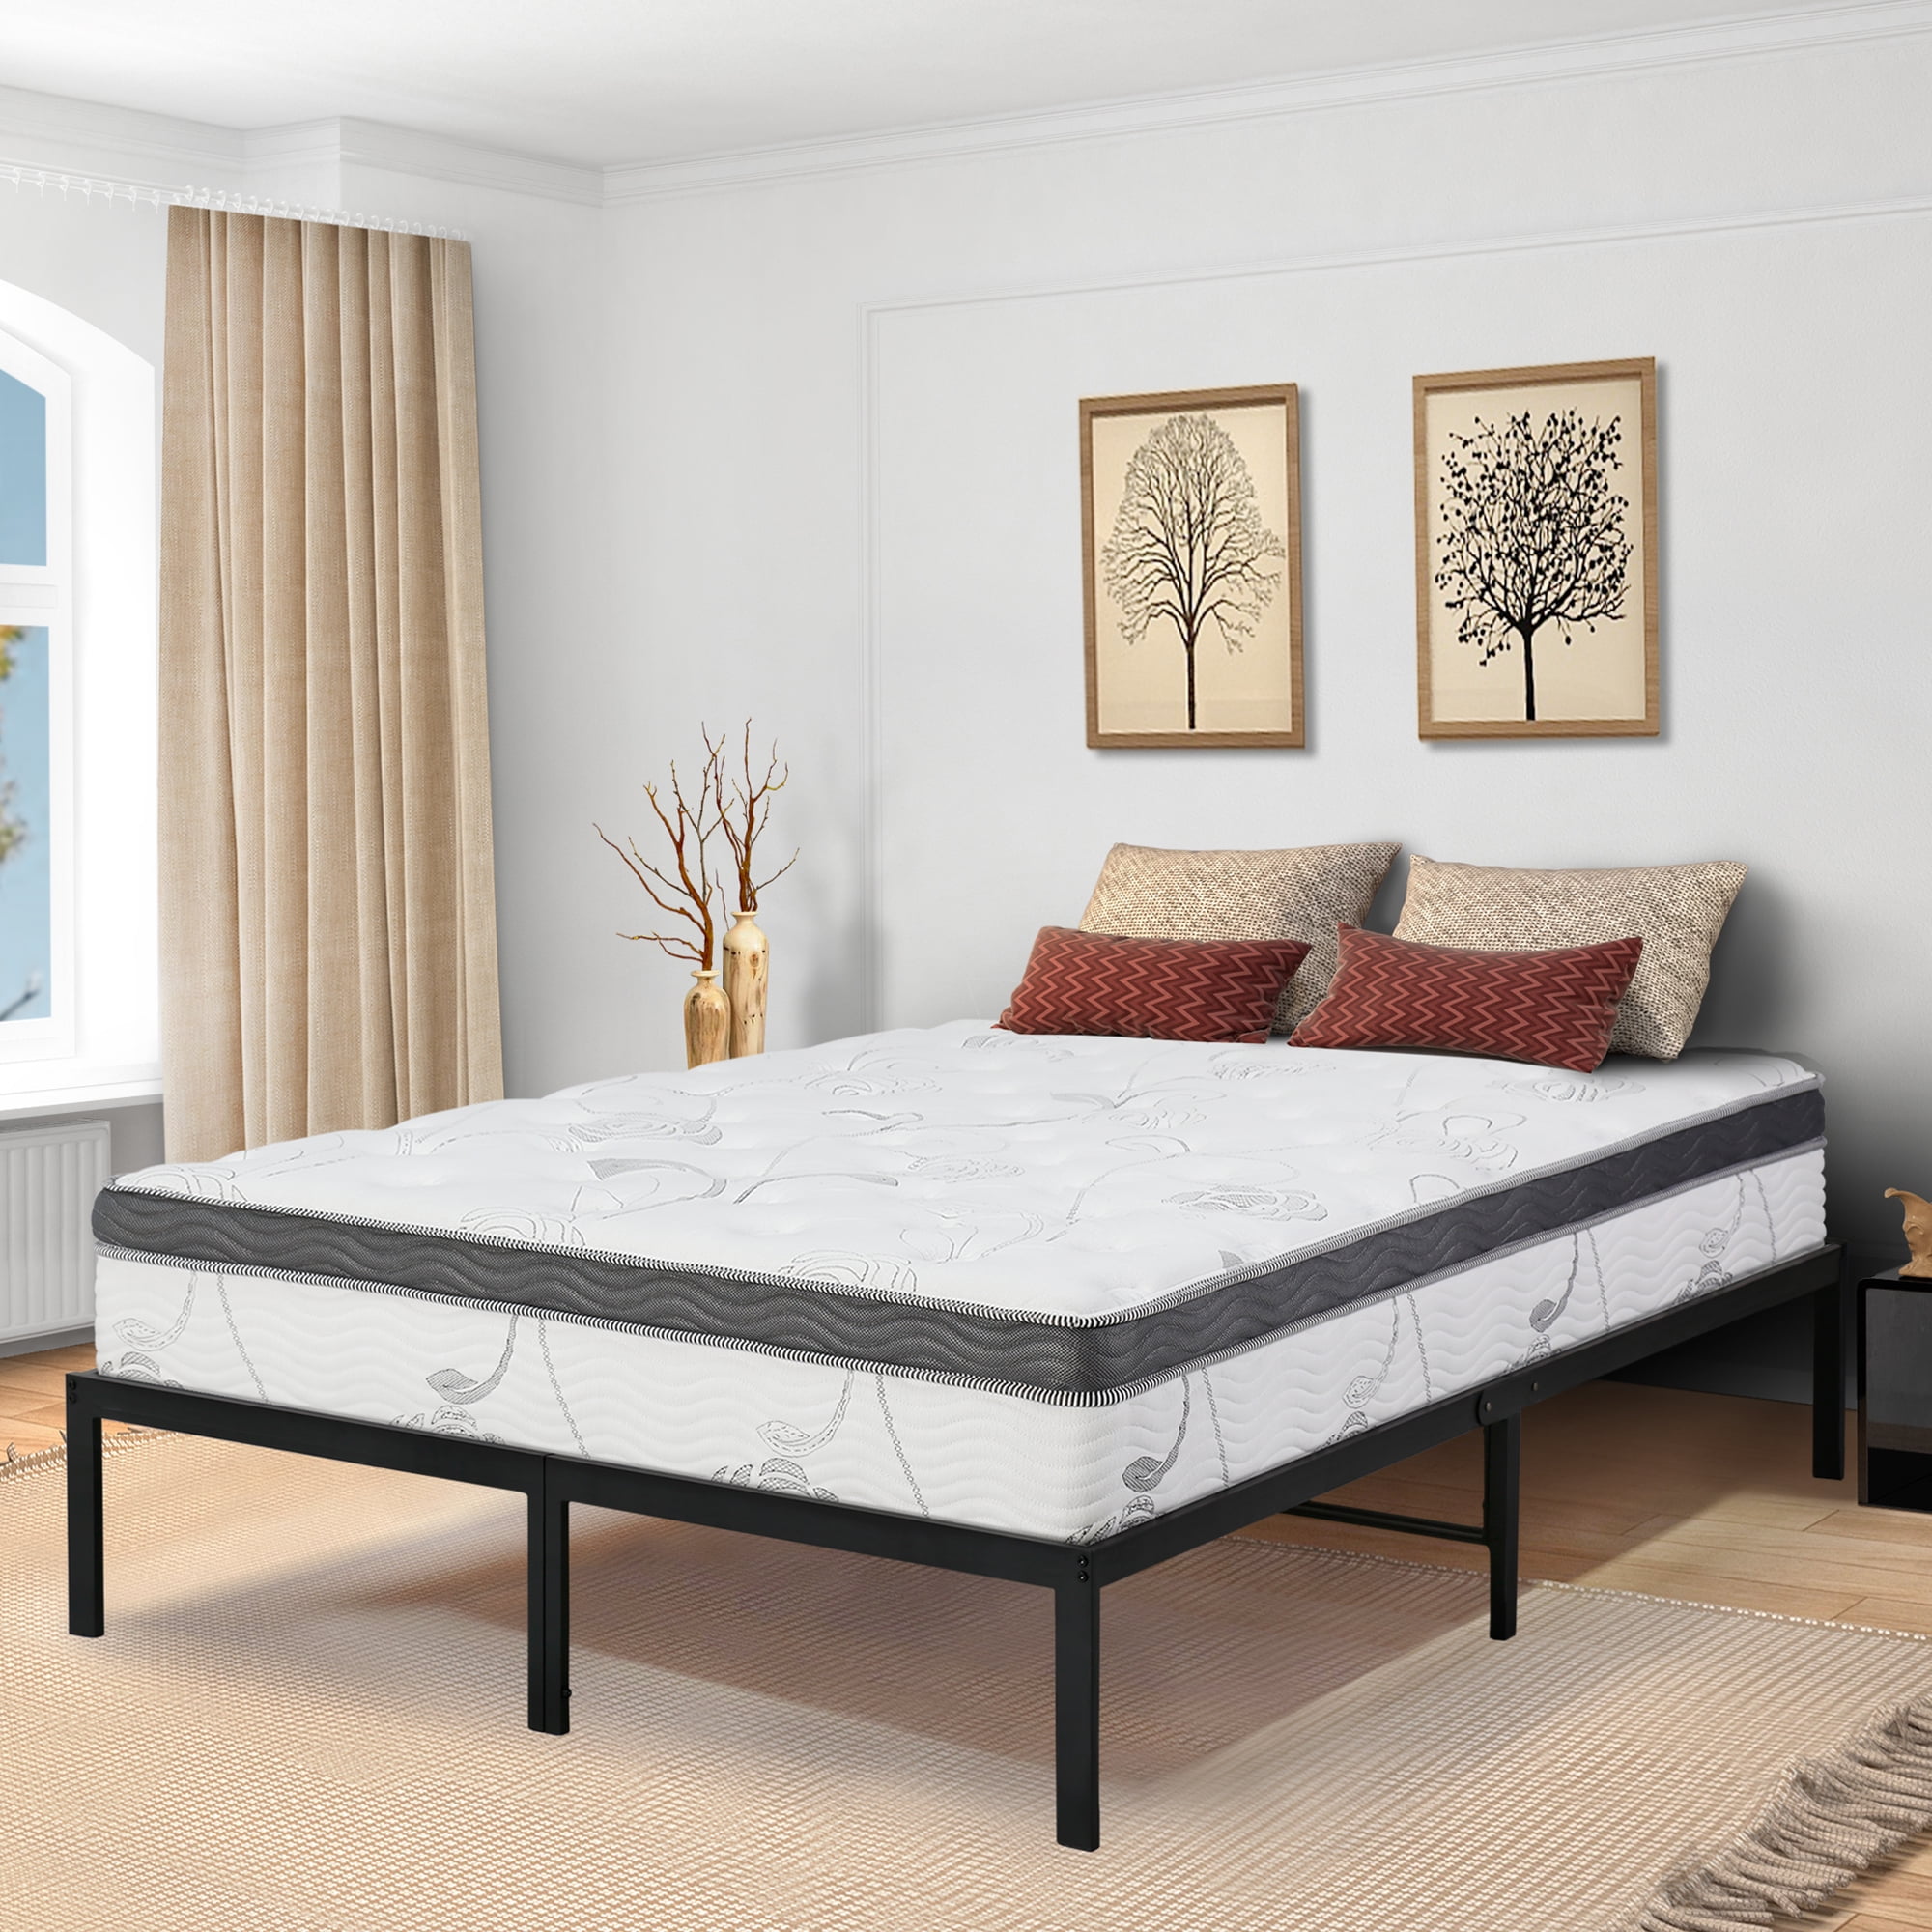 GranRest 14 Inch Innovative Metal Platform Bed Frame, Full 